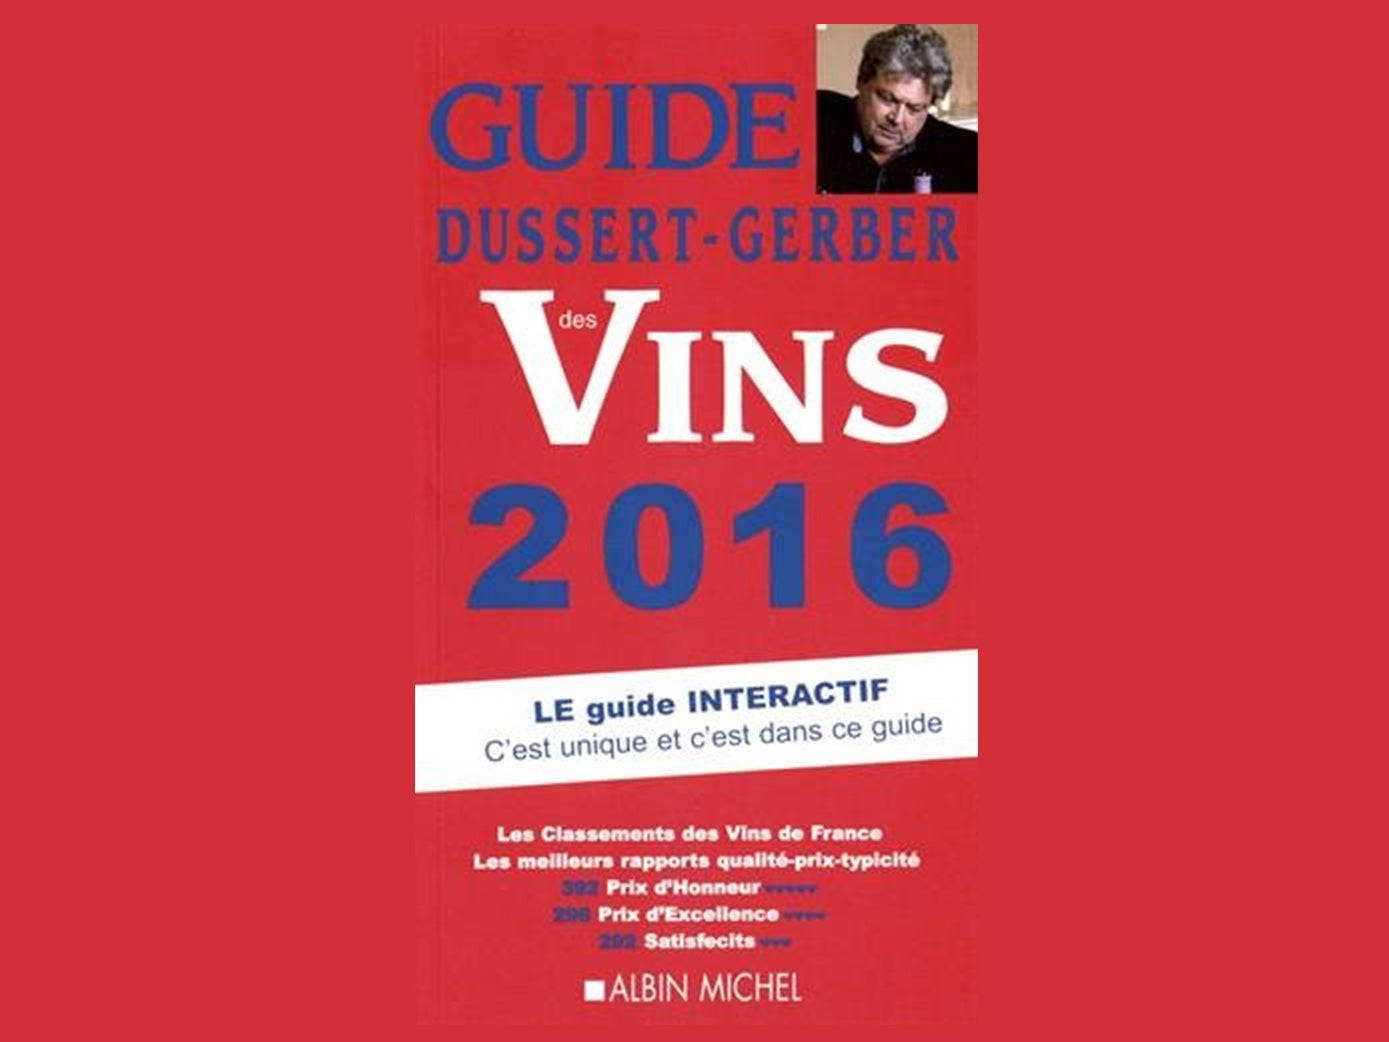 Prix d'Honneur dans le Guide des Vins Dussert-Gerber 2016